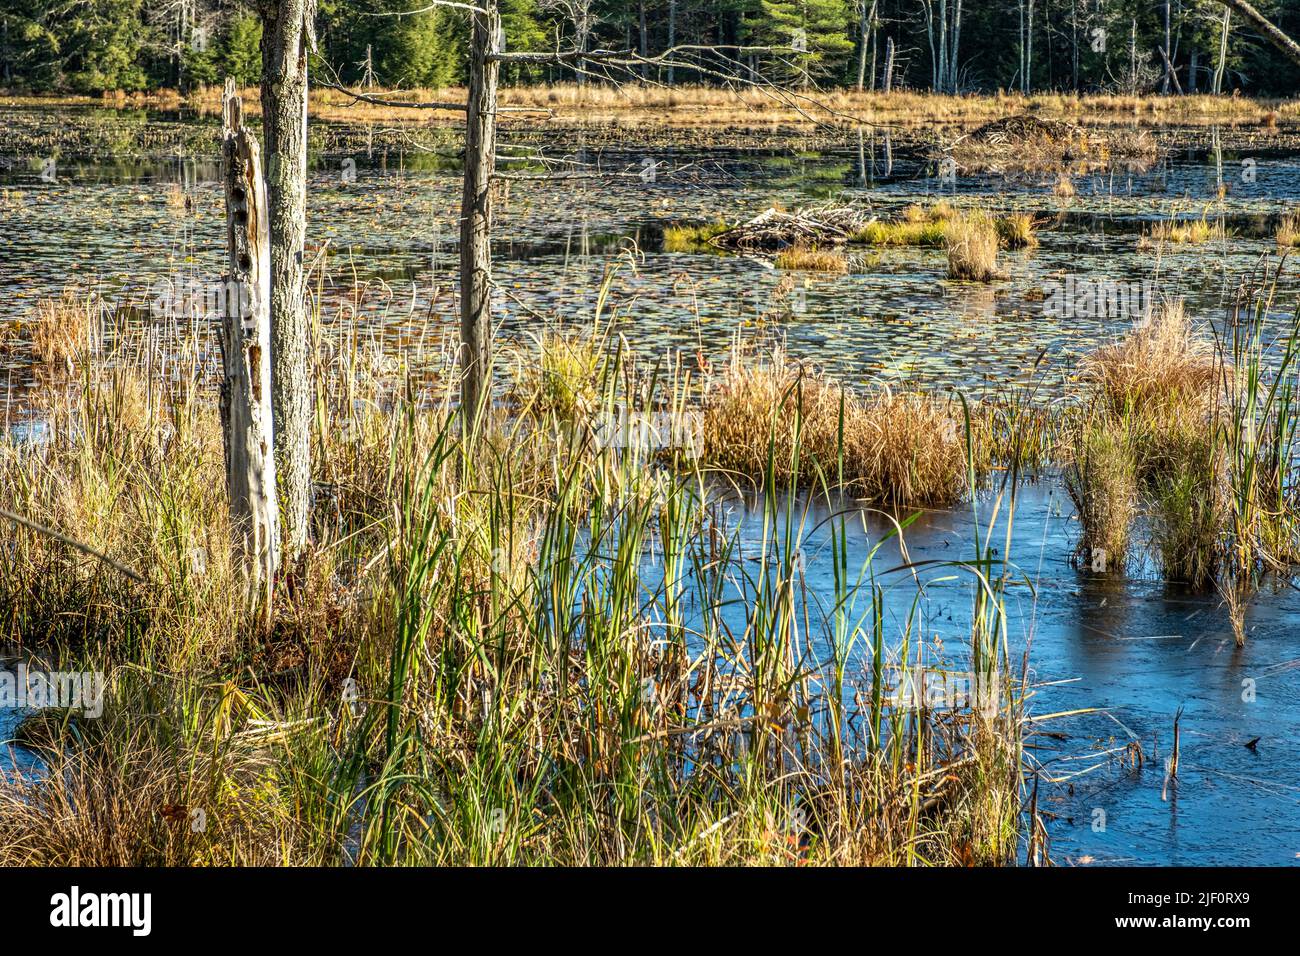 A wetland in Petersham, Massachusetts Stock Photo